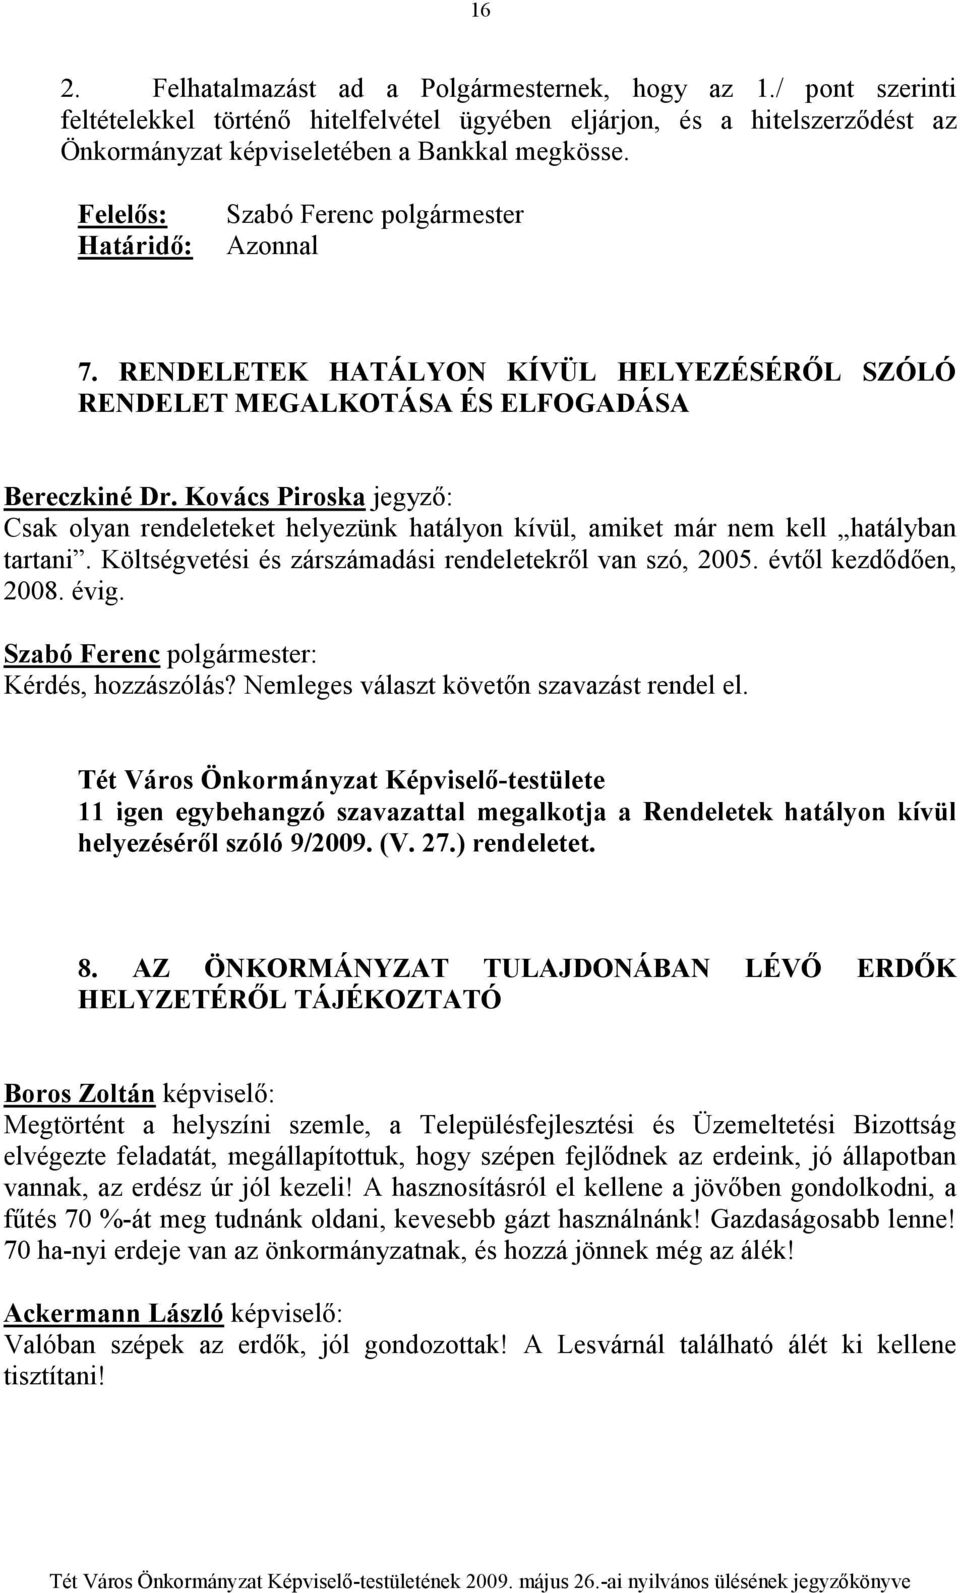 Kovács Piroska jegyzı: Csak olyan rendeleteket helyezünk hatályon kívül, amiket már nem kell hatályban tartani. Költségvetési és zárszámadási rendeletekrıl van szó, 2005. évtıl kezdıdıen, 2008. évig.